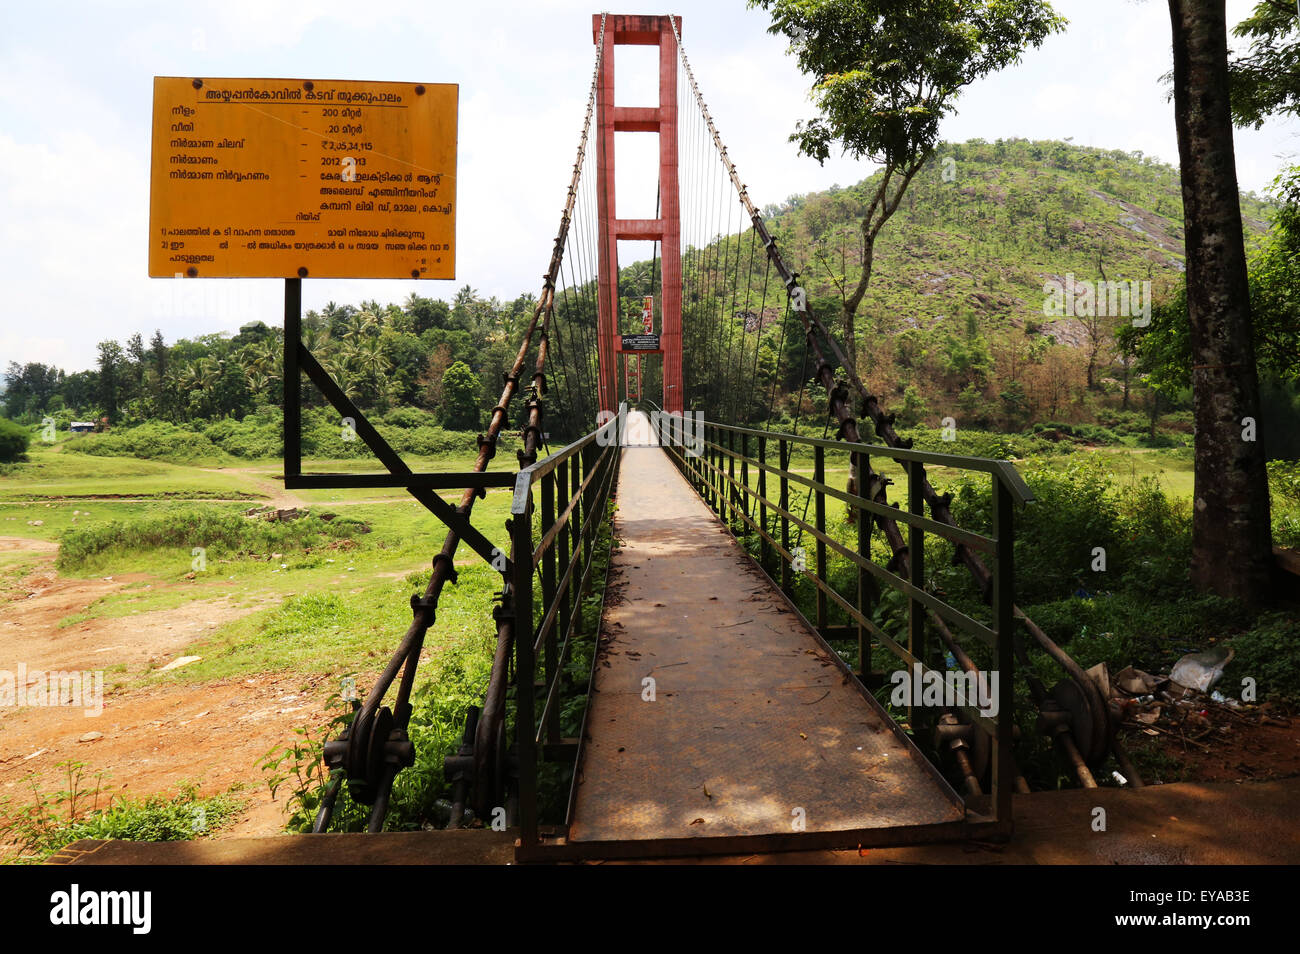 Ayyappancoil pont suspendu, près de Kattappana, Idukki dans le Kerala, en Inde, l'un des beaux sites touristiques de l'Inde du Sud Banque D'Images